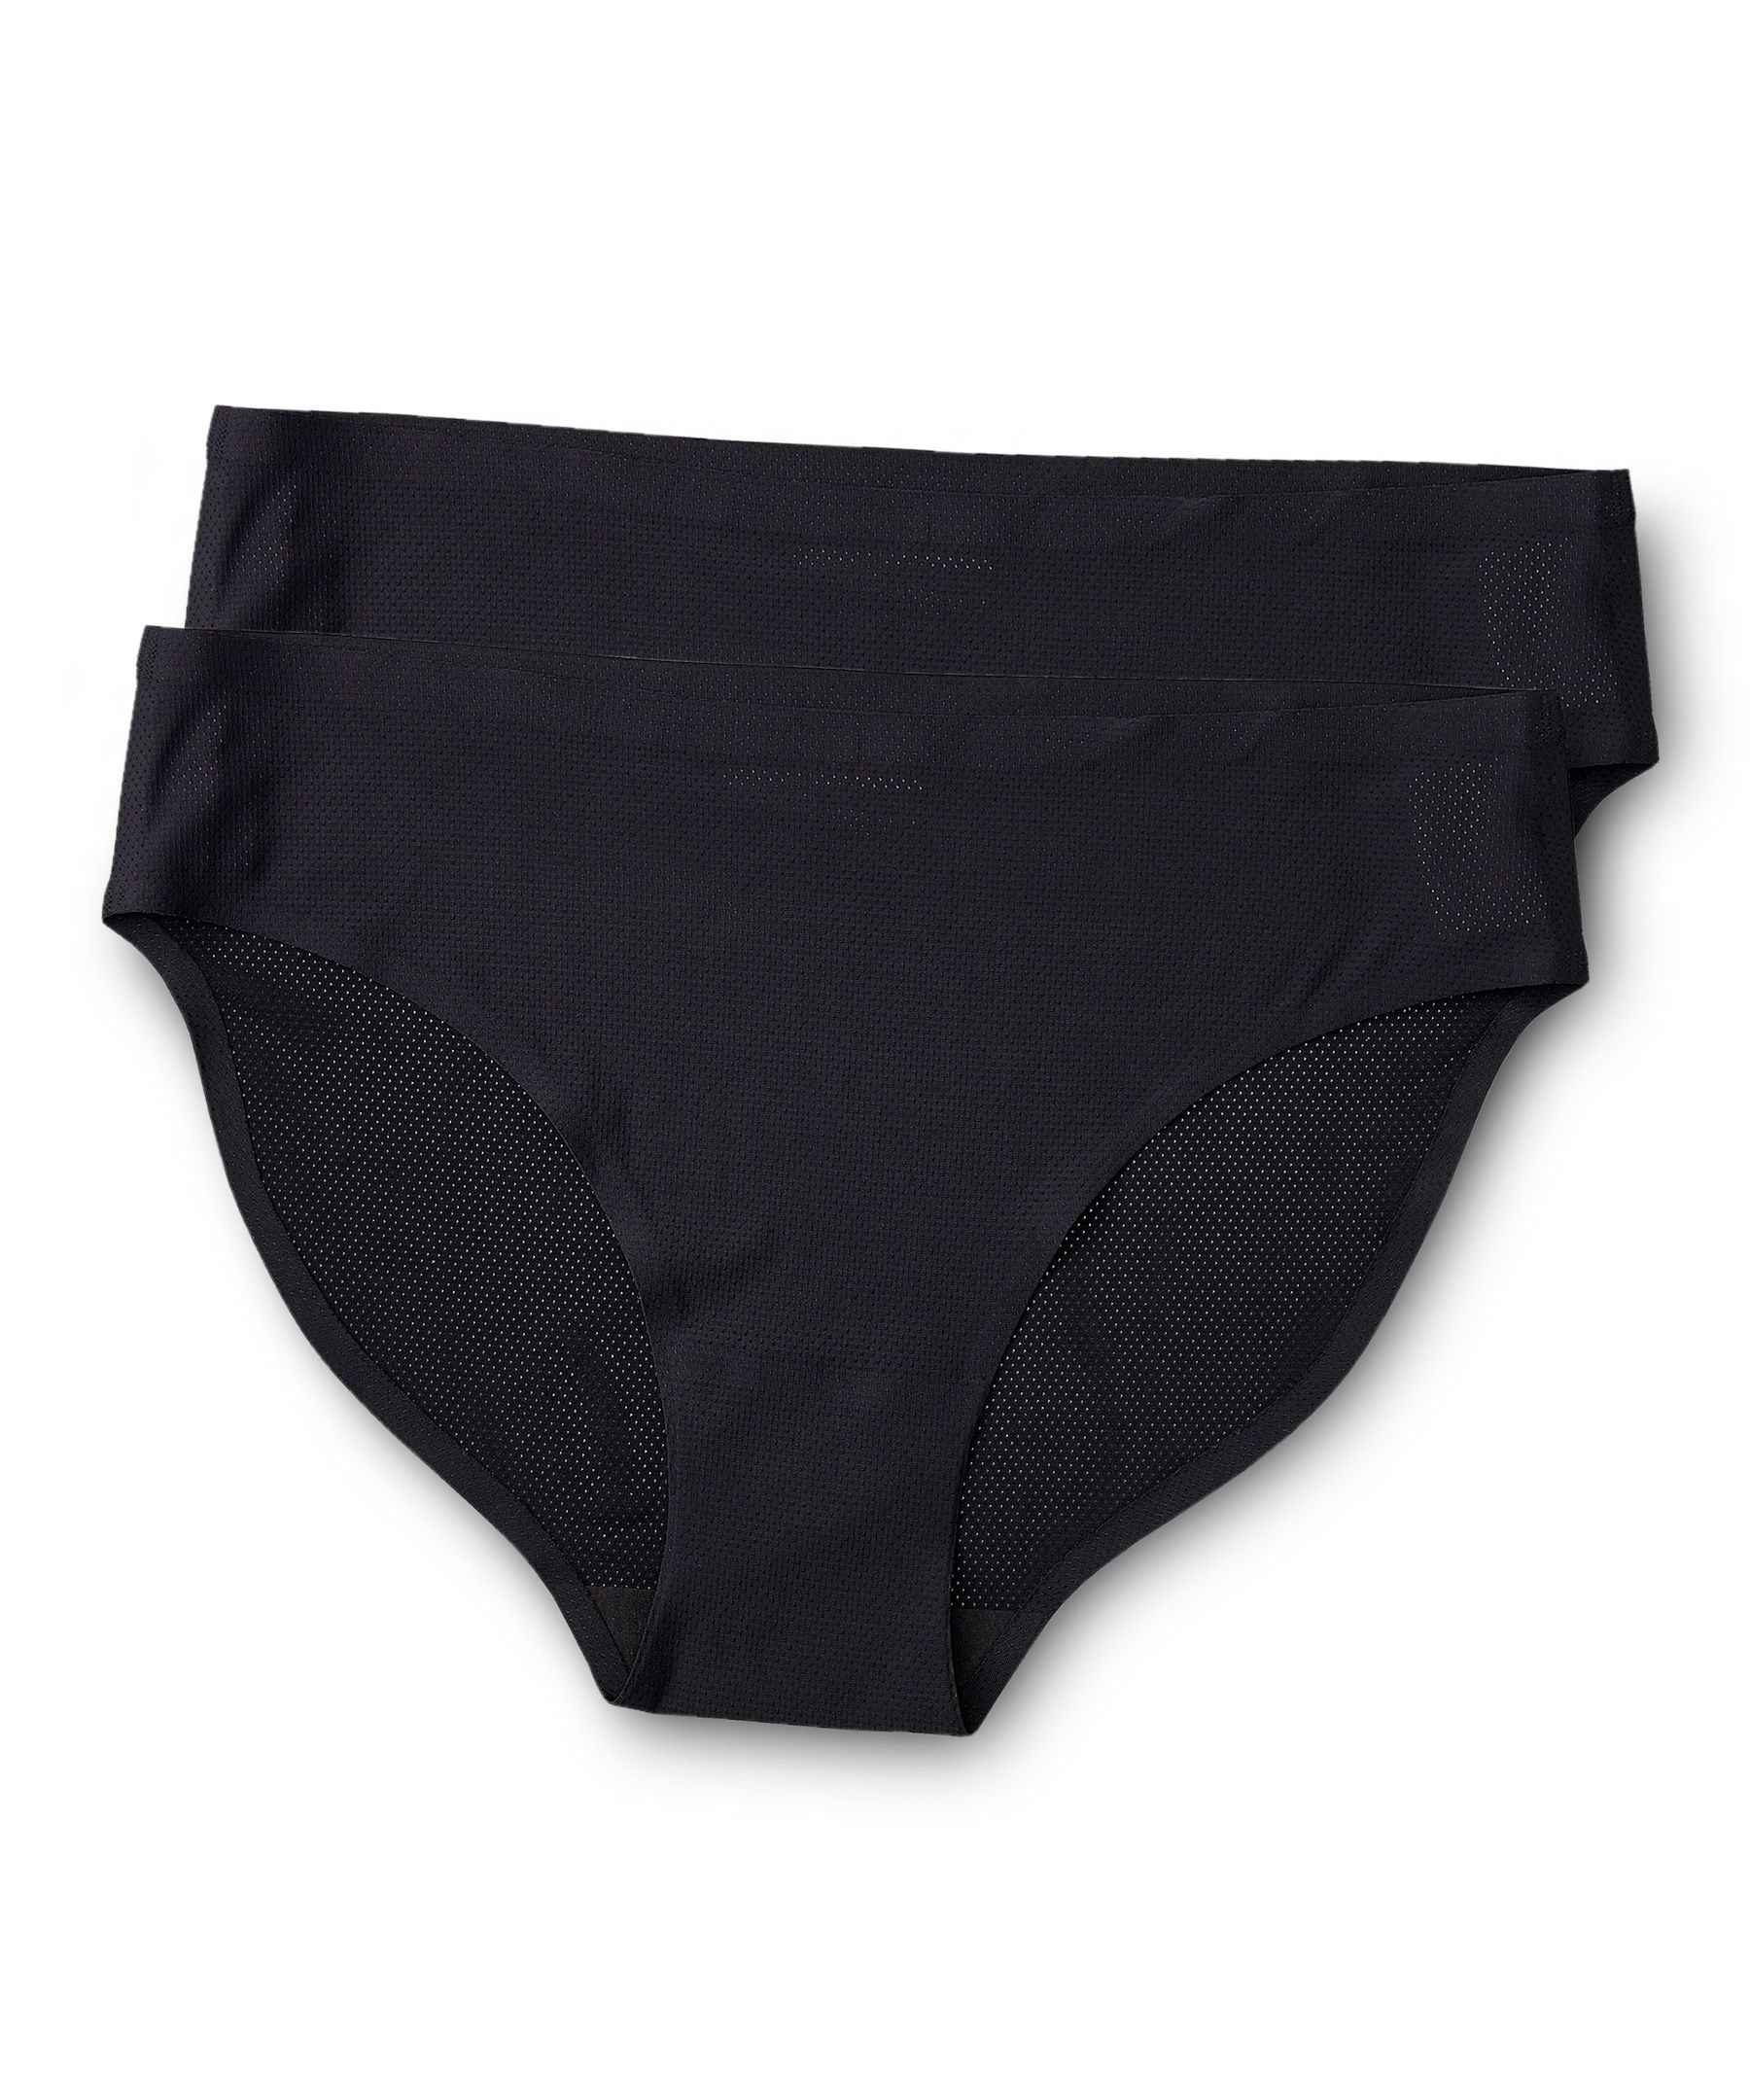 Denver Hayes Women's Invisible Mesh Bikini Underwear Briefs